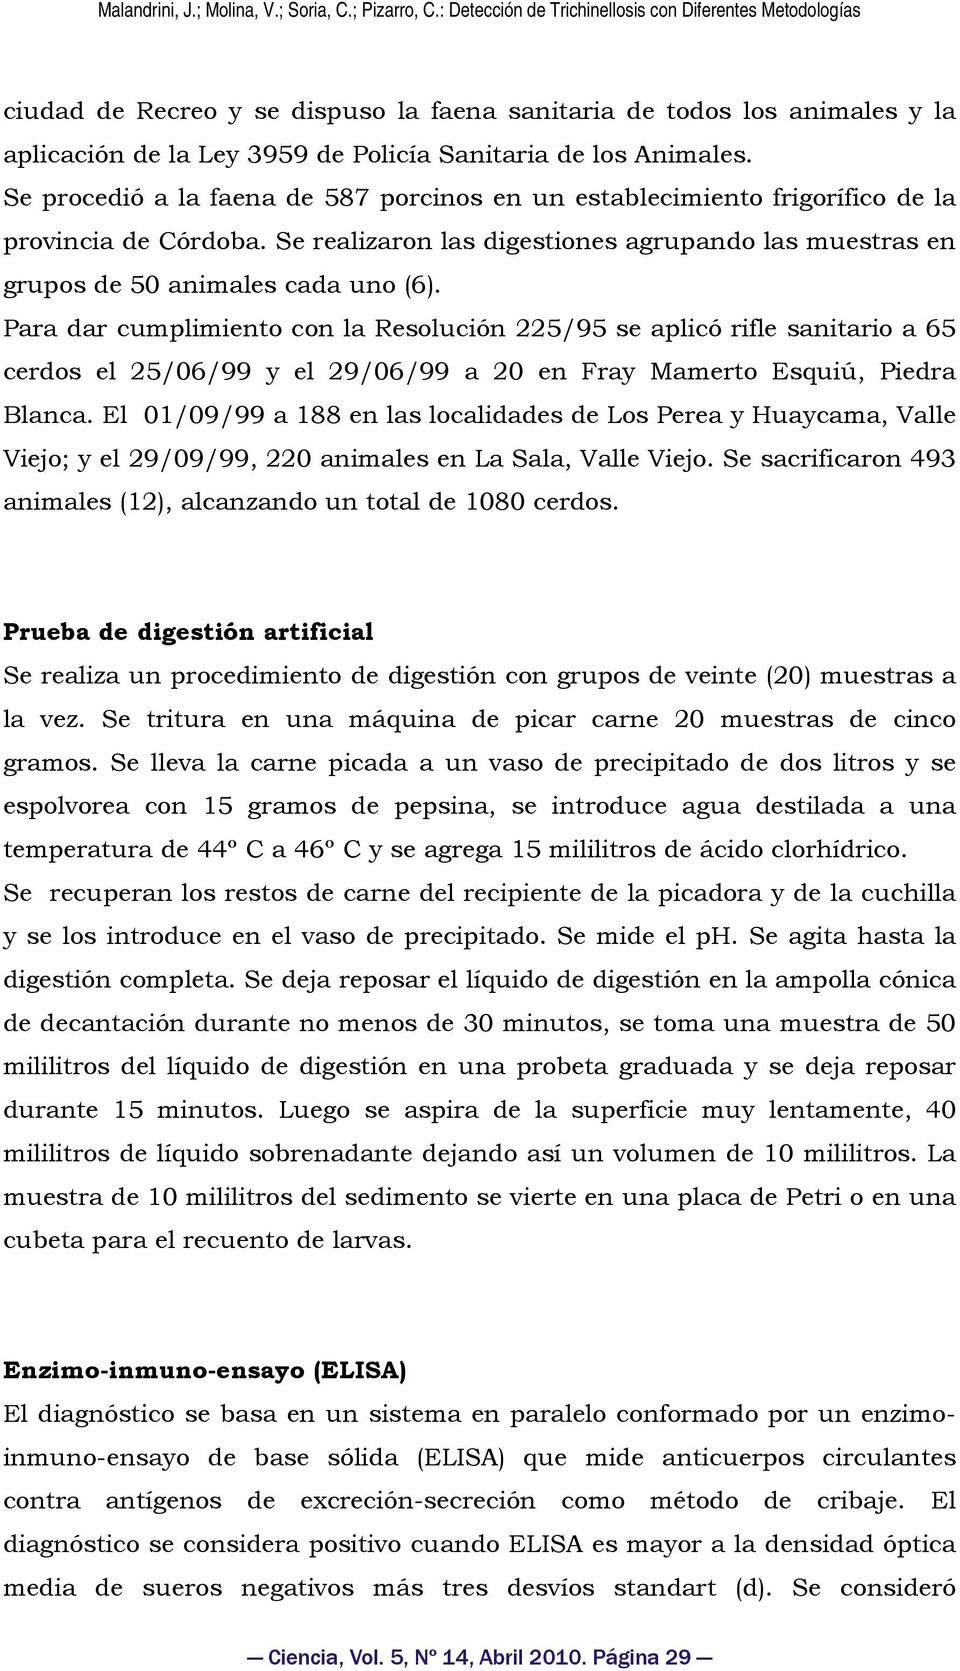 Para dar cumplimiento con la Resolución 225/95 se aplicó rifle sanitario a 65 cerdos el 25/06/99 y el 29/06/99 a 20 en Fray Mamerto Esquiú, Piedra Blanca.